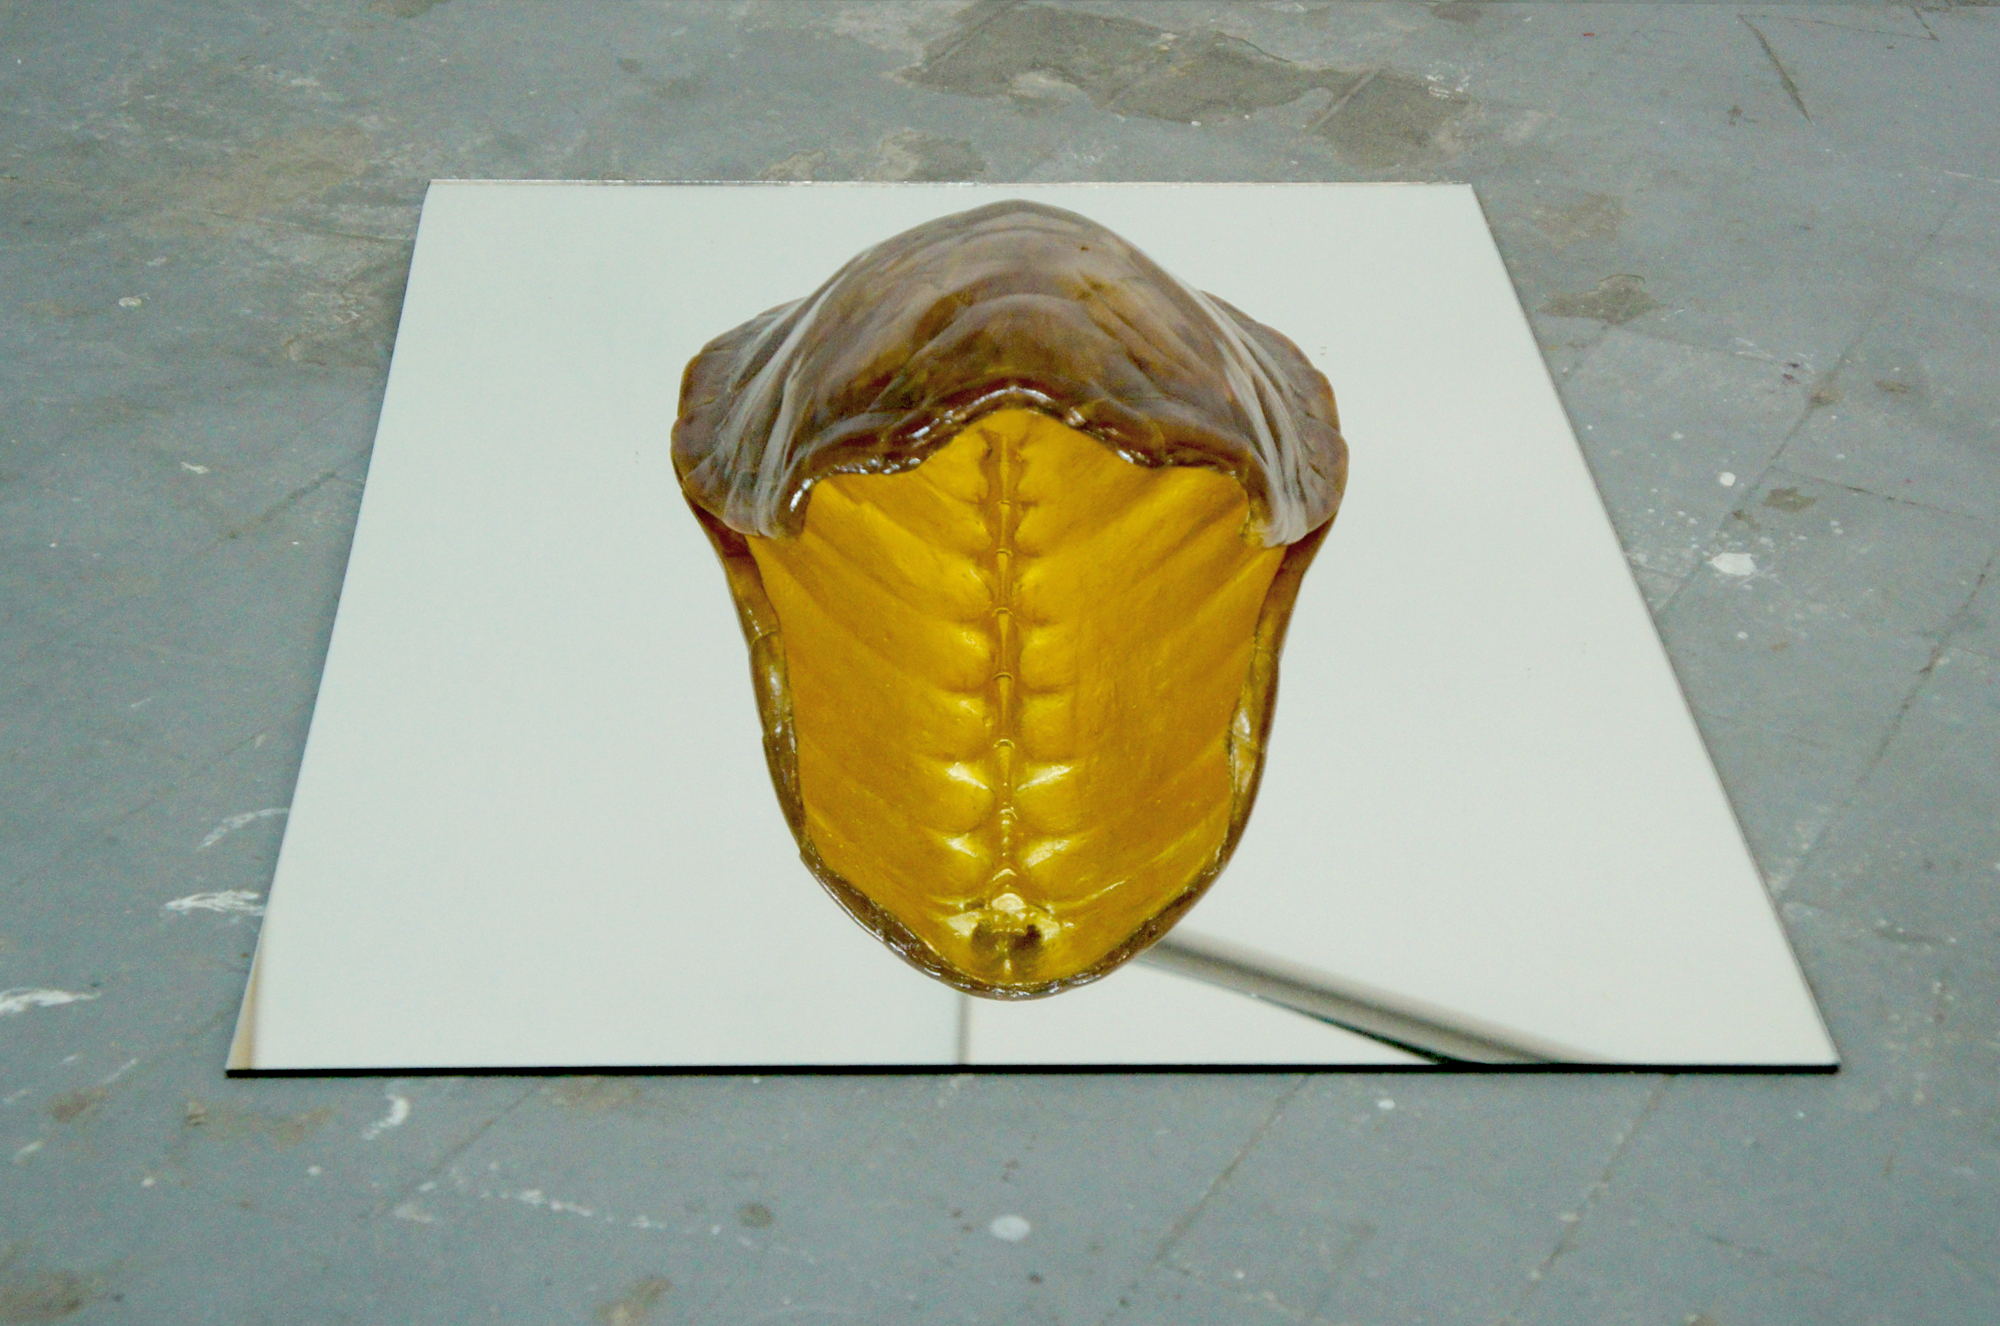  LE COBRA, 2017
Carapace de tortue, dorure a la feuille 24 carats, miroir - 50 x 70 cm
